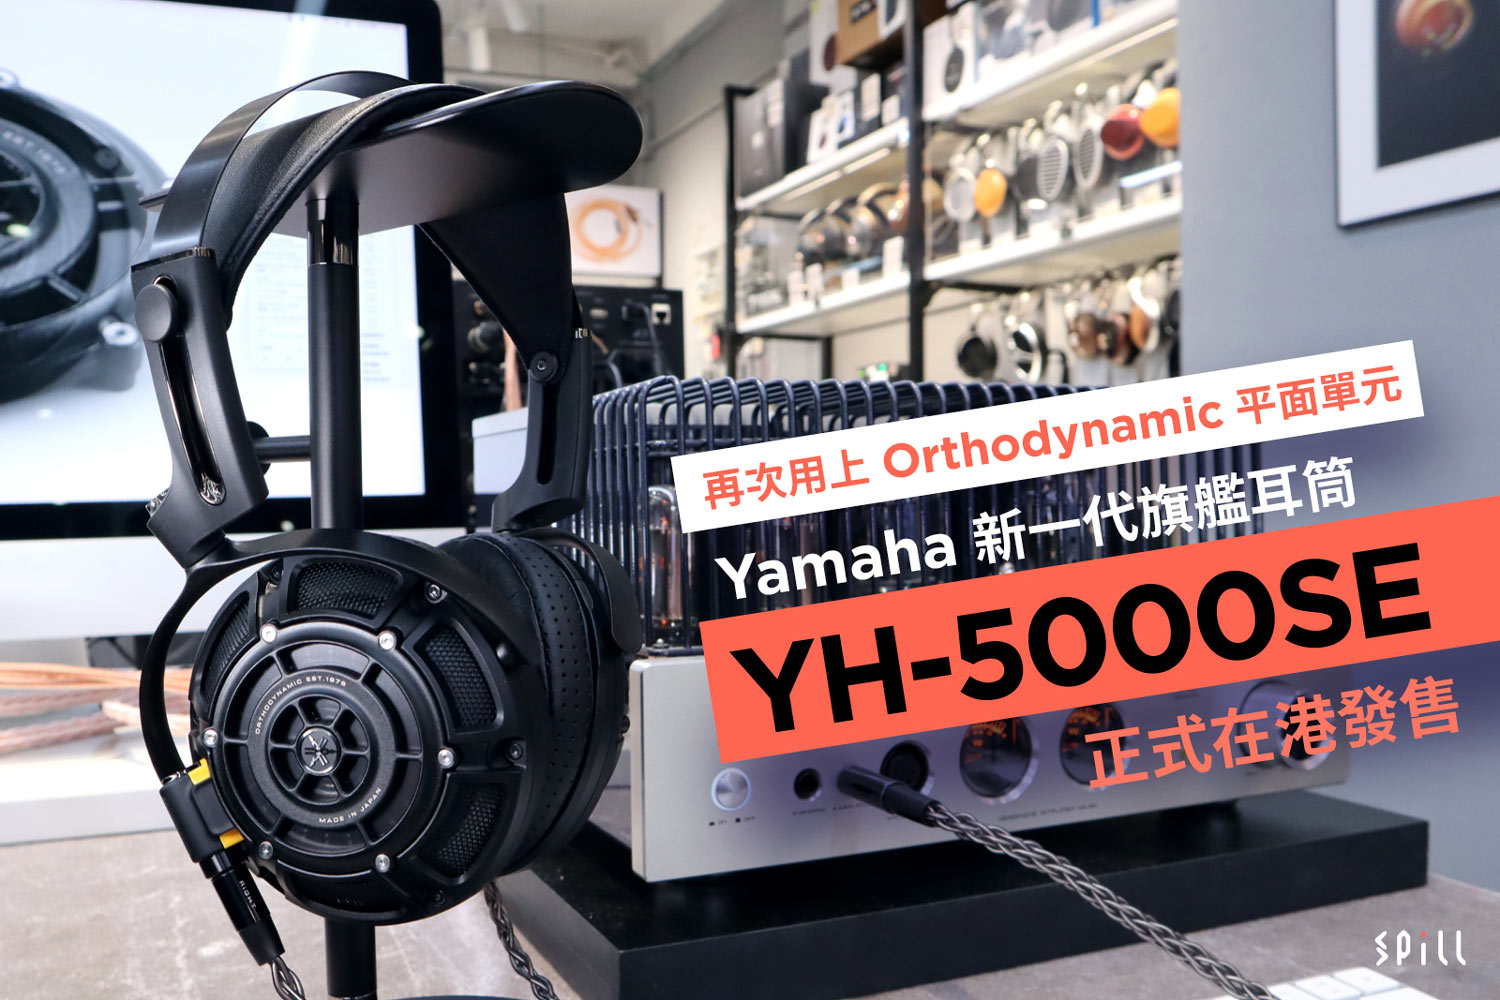 再次用上 Orthodynamic 平面單元　Yamaha 新一代旗艦耳筒 YH-5000SE 正式在港發售